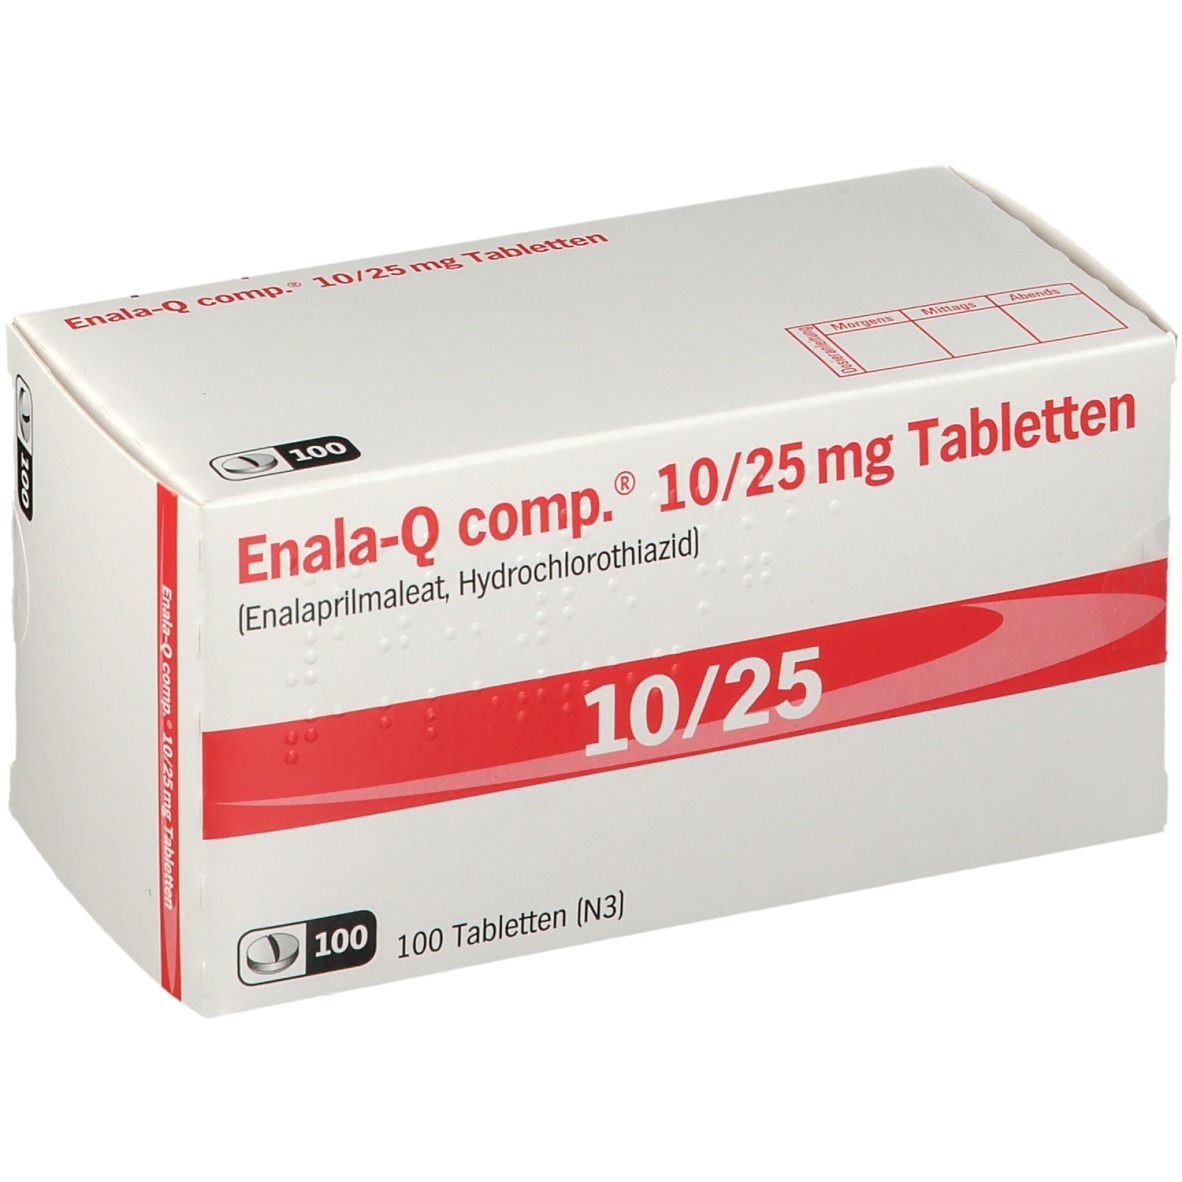 Enala-Q comp.® 10/25 mg